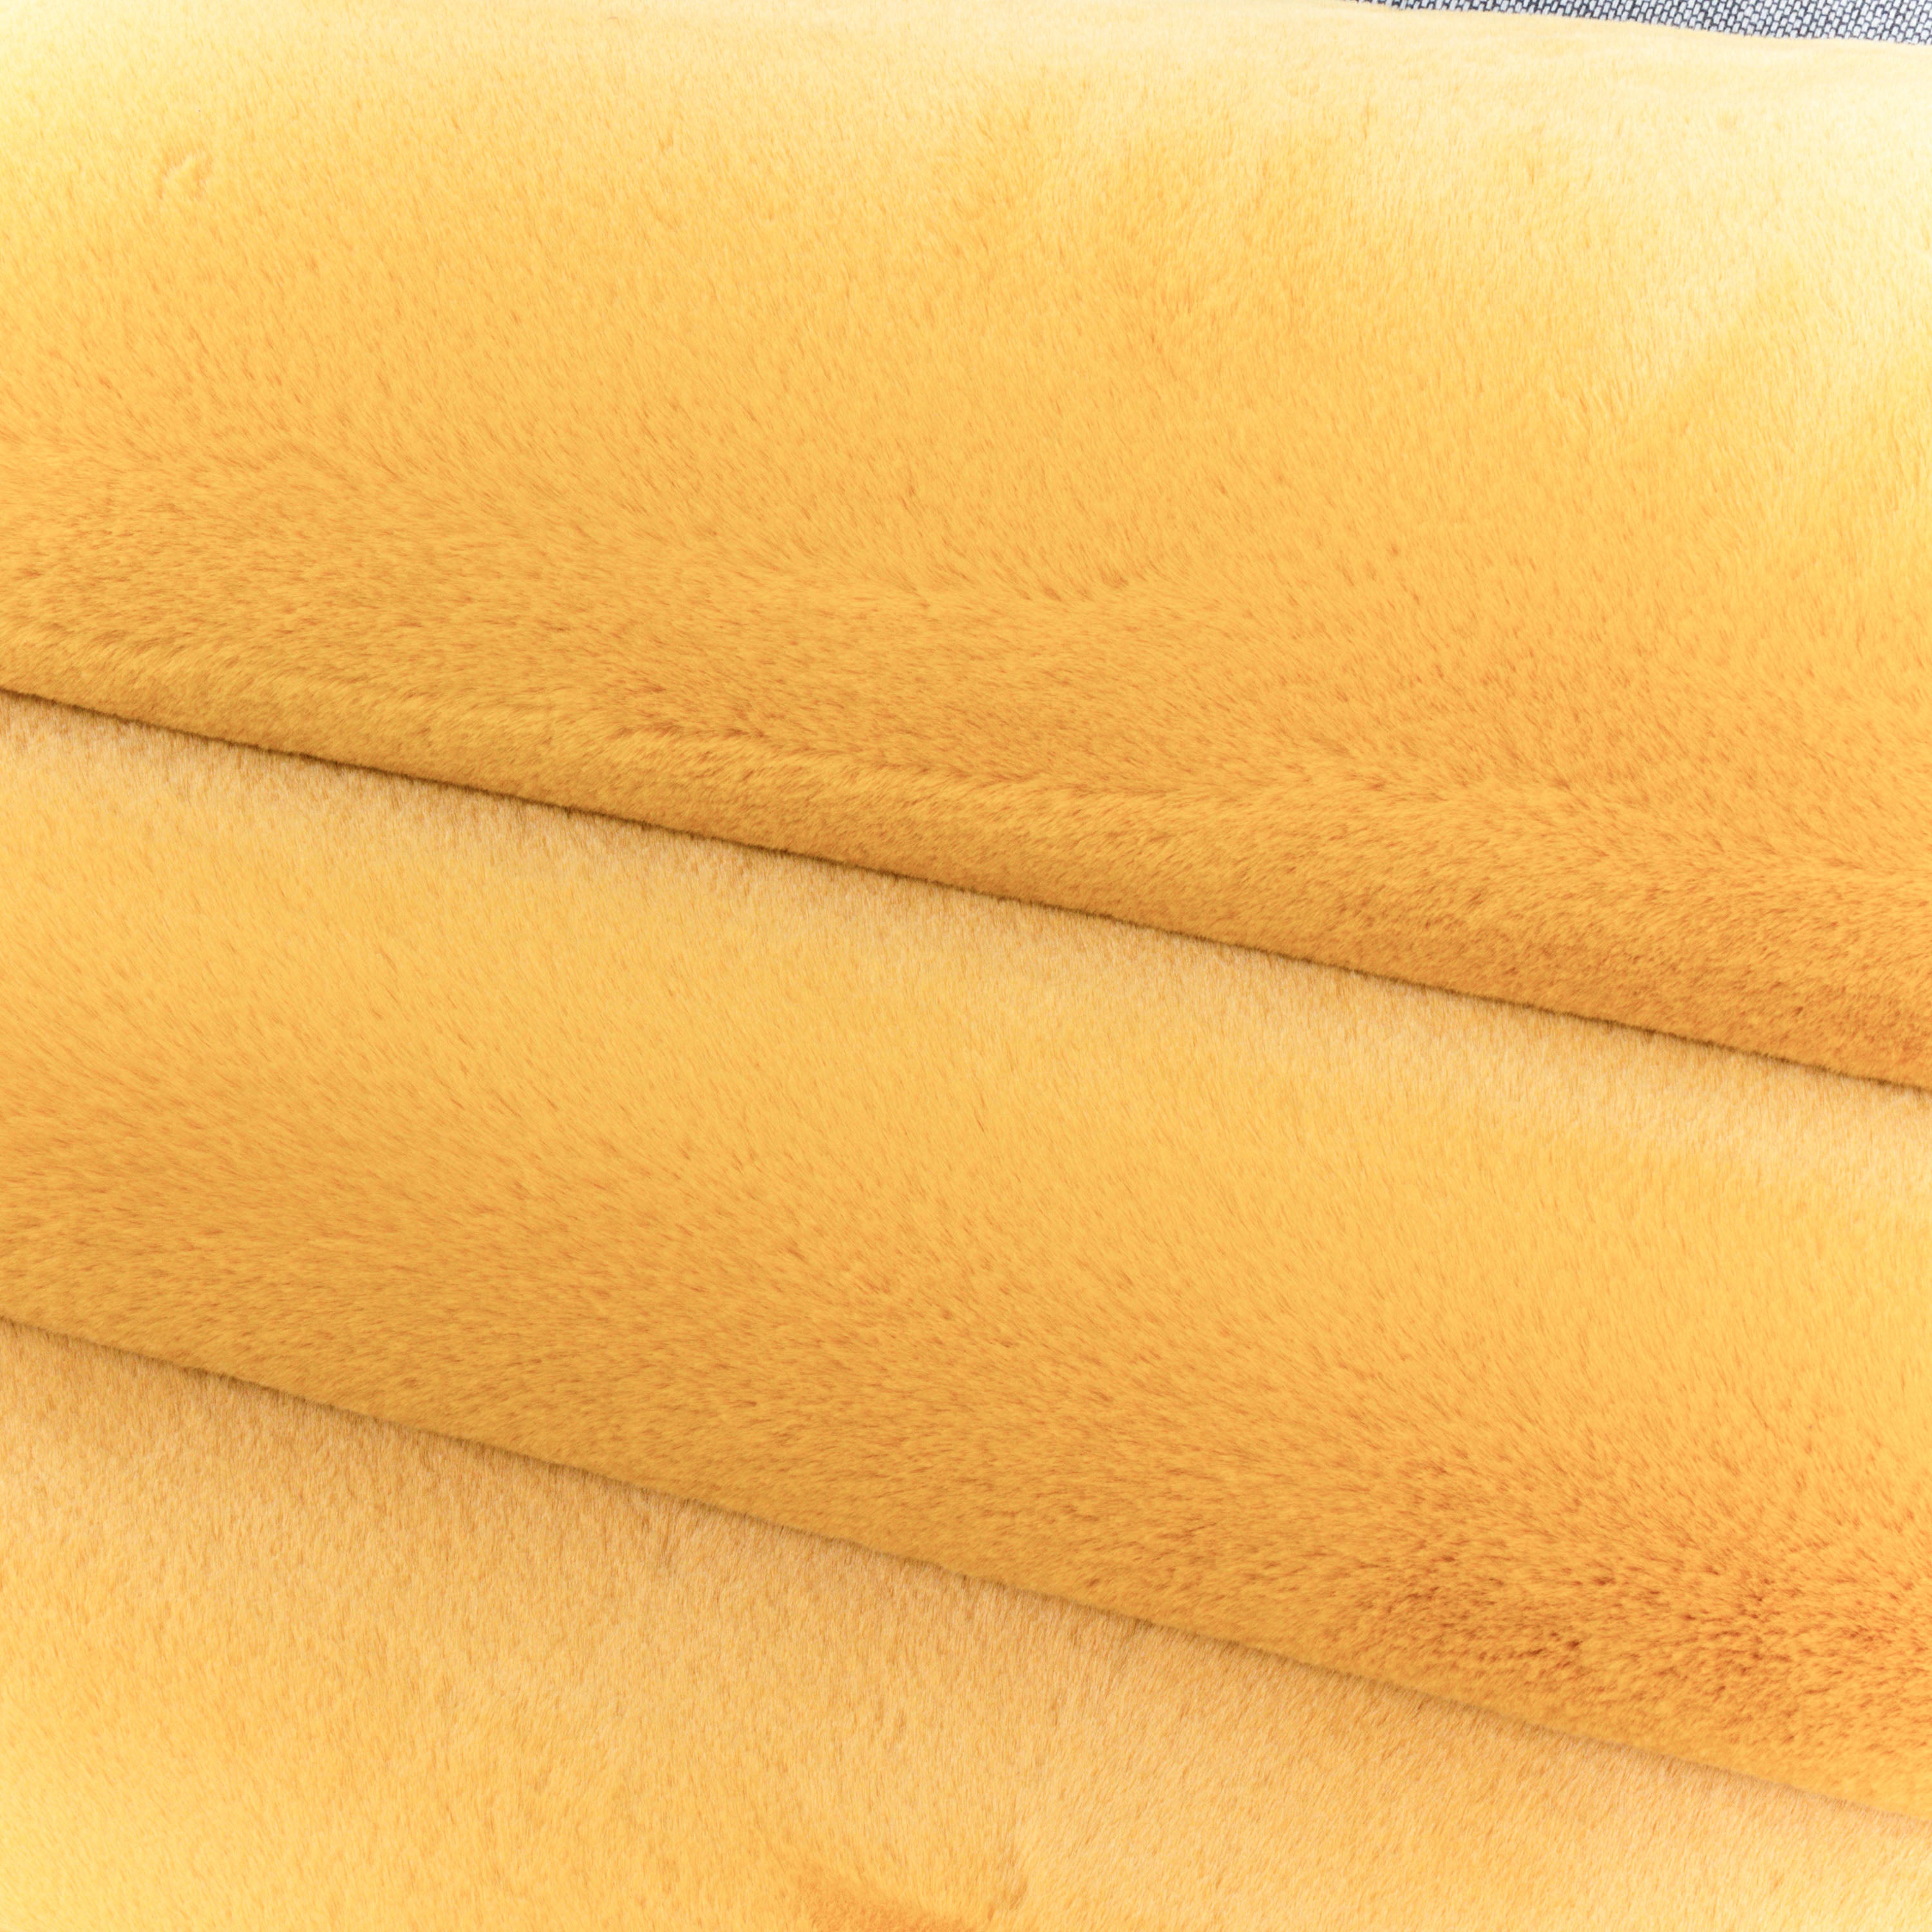 Kurzflor Teppich Soft Touch Wohnzimmerteppich Baumwollrücken Gold Gelb